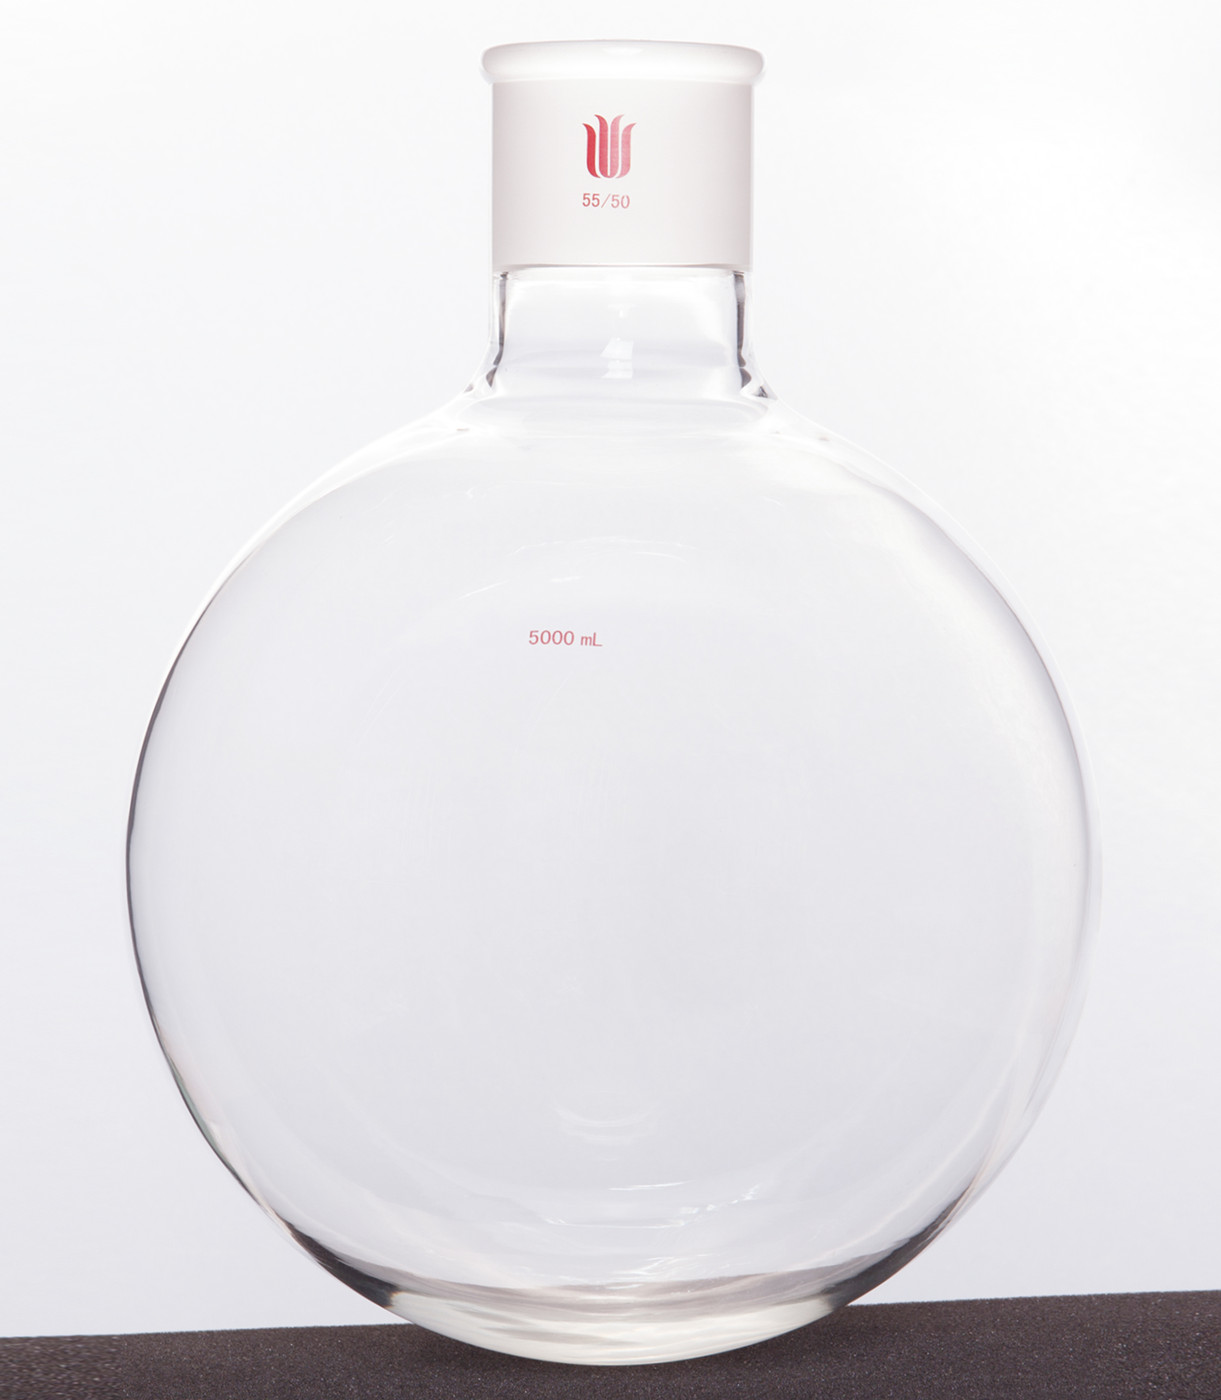 单颈圆底球瓶,厚壁高强度,磨口:55/50,5000ml